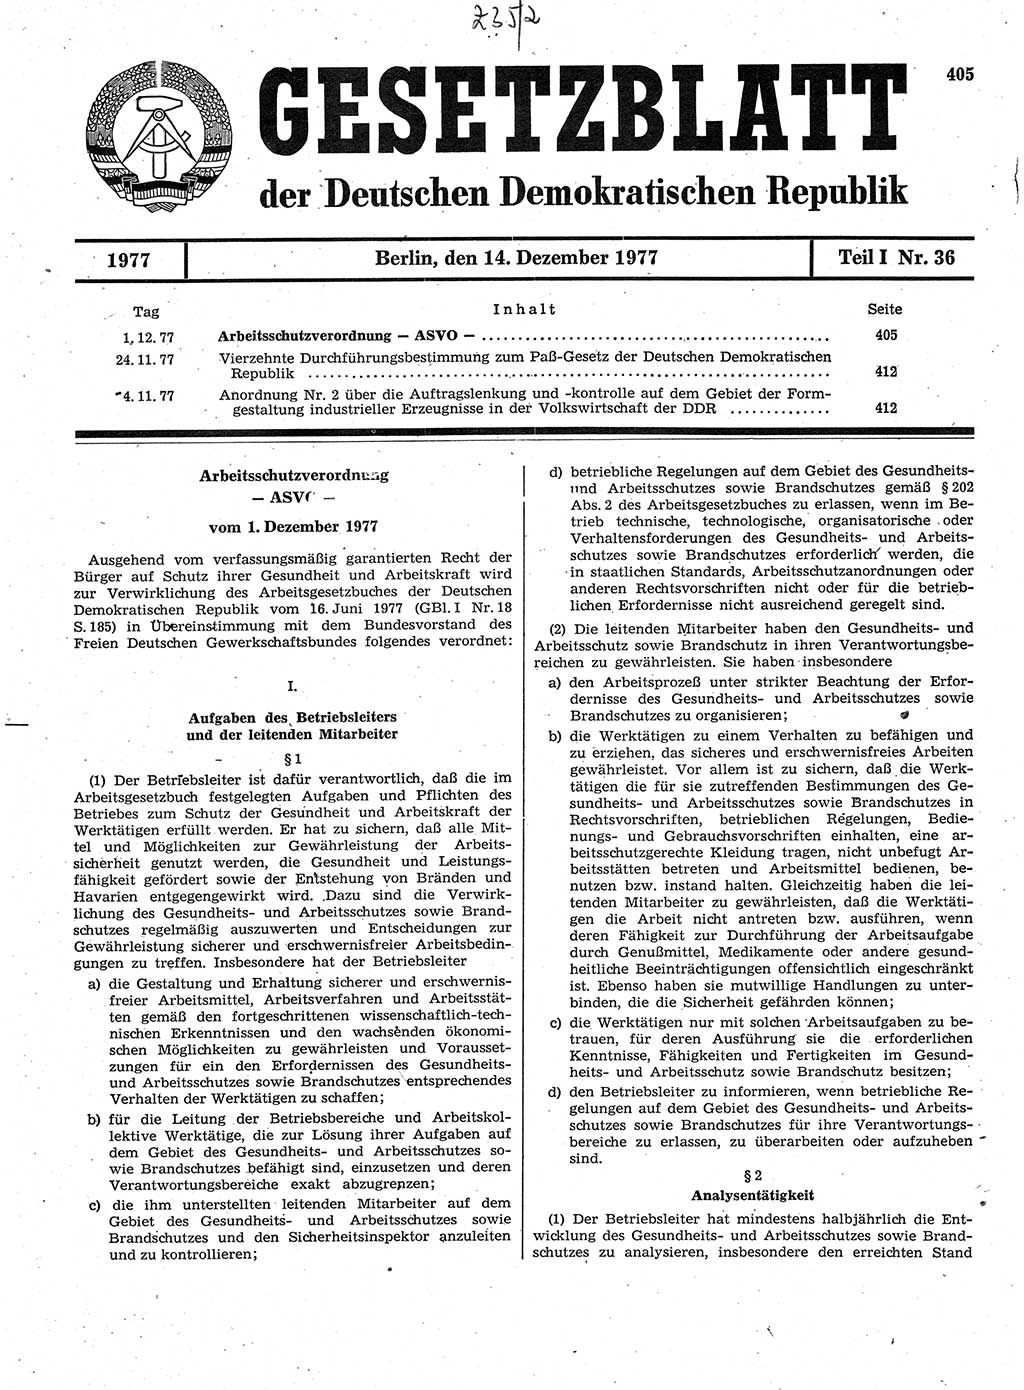 Gesetzblatt (GBl.) der Deutschen Demokratischen Republik (DDR) Teil Ⅰ 1977, Seite 405 (GBl. DDR Ⅰ 1977, S. 405)